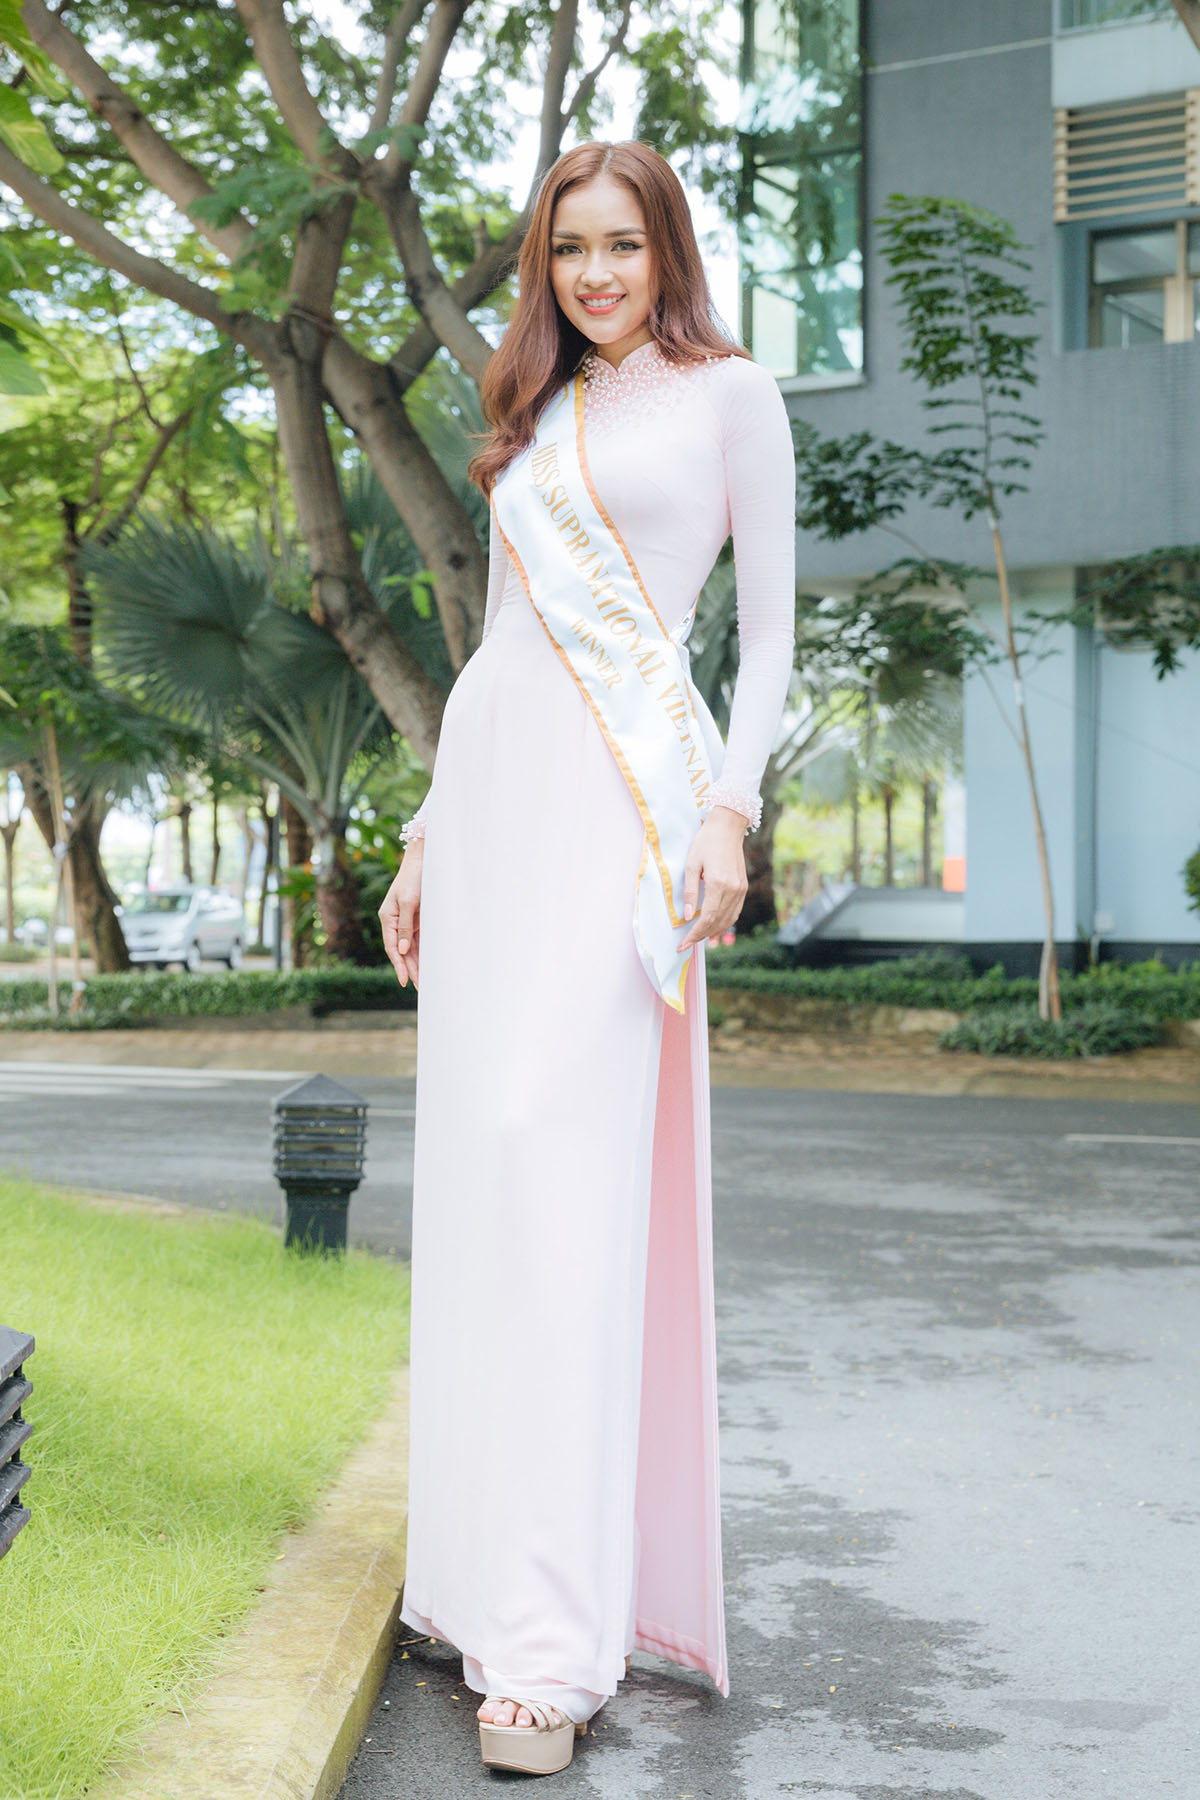 Hoa hậu Ngọc Châu rạng rỡ áo dài về thăm trường sau đăng quang 'Miss Supranational Vietnam 2018'